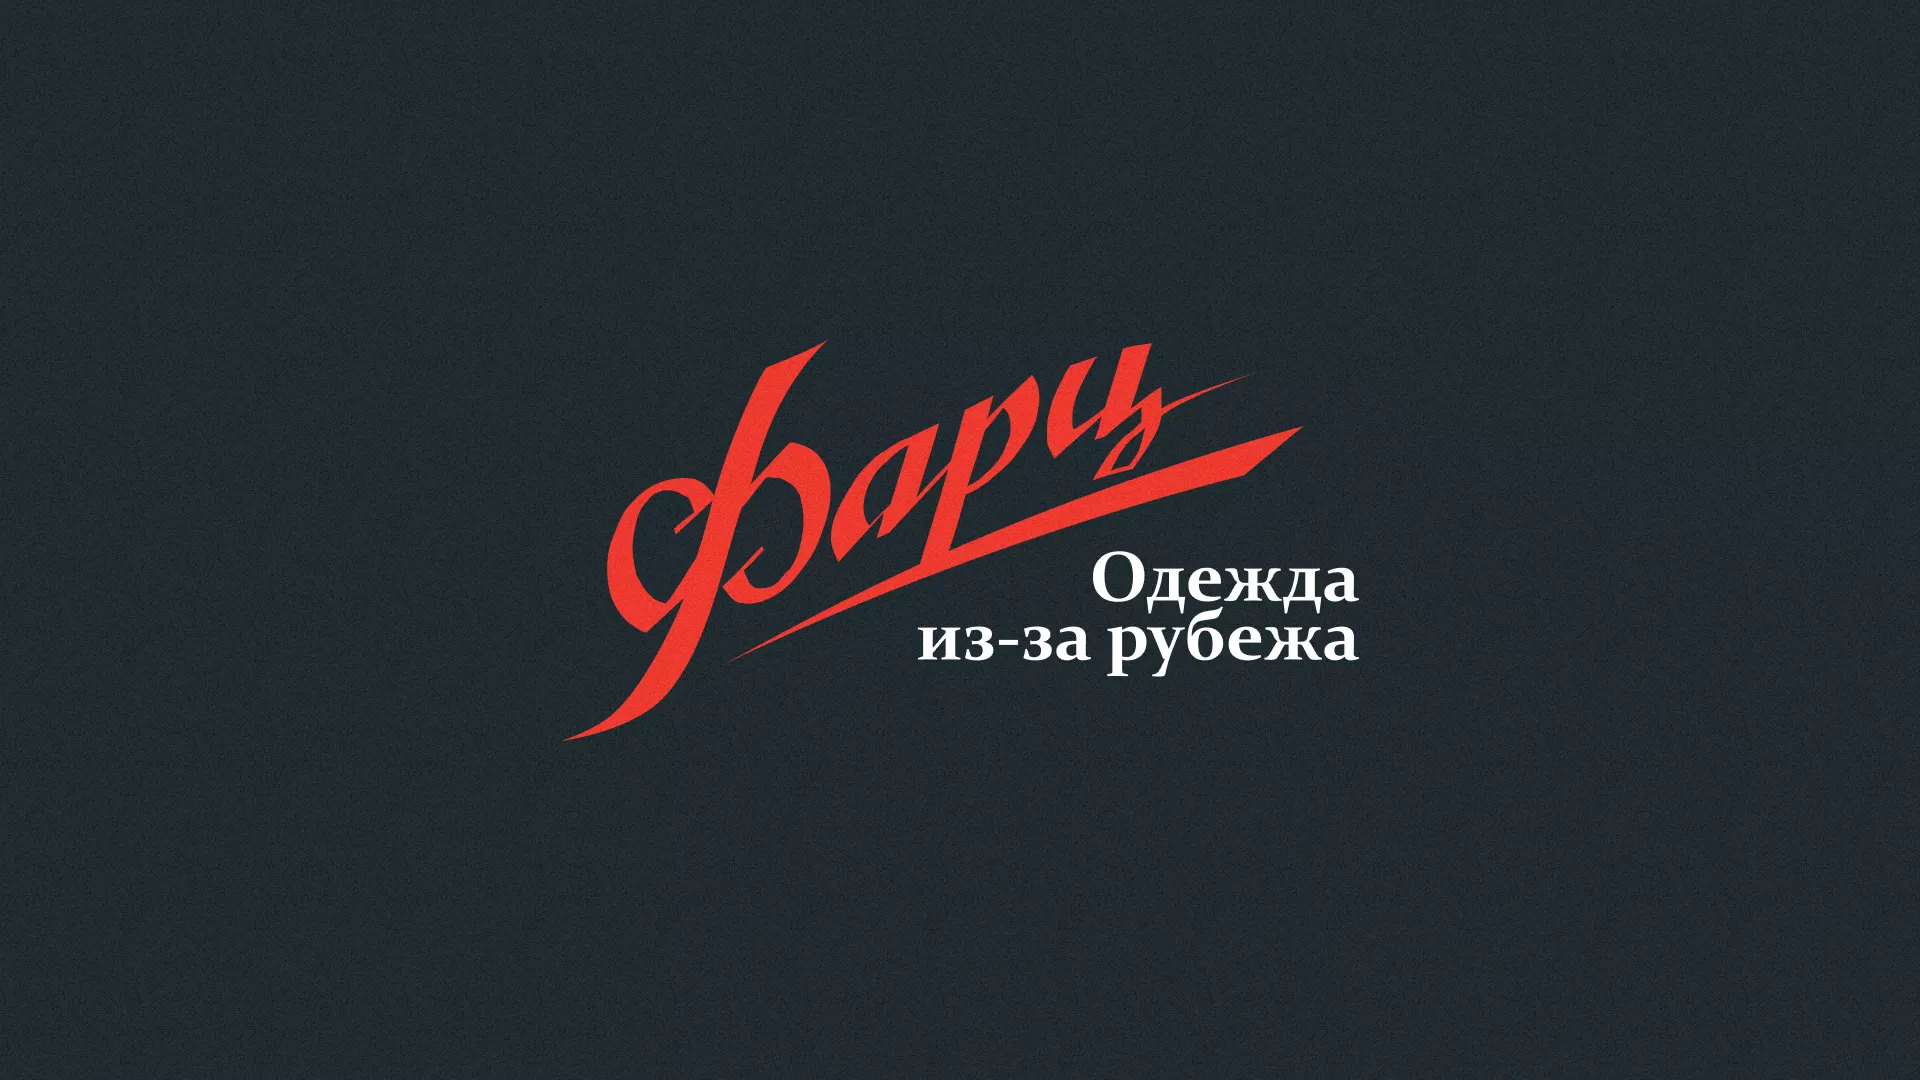 Разработка логотипа магазина «Фарц» в Оханске